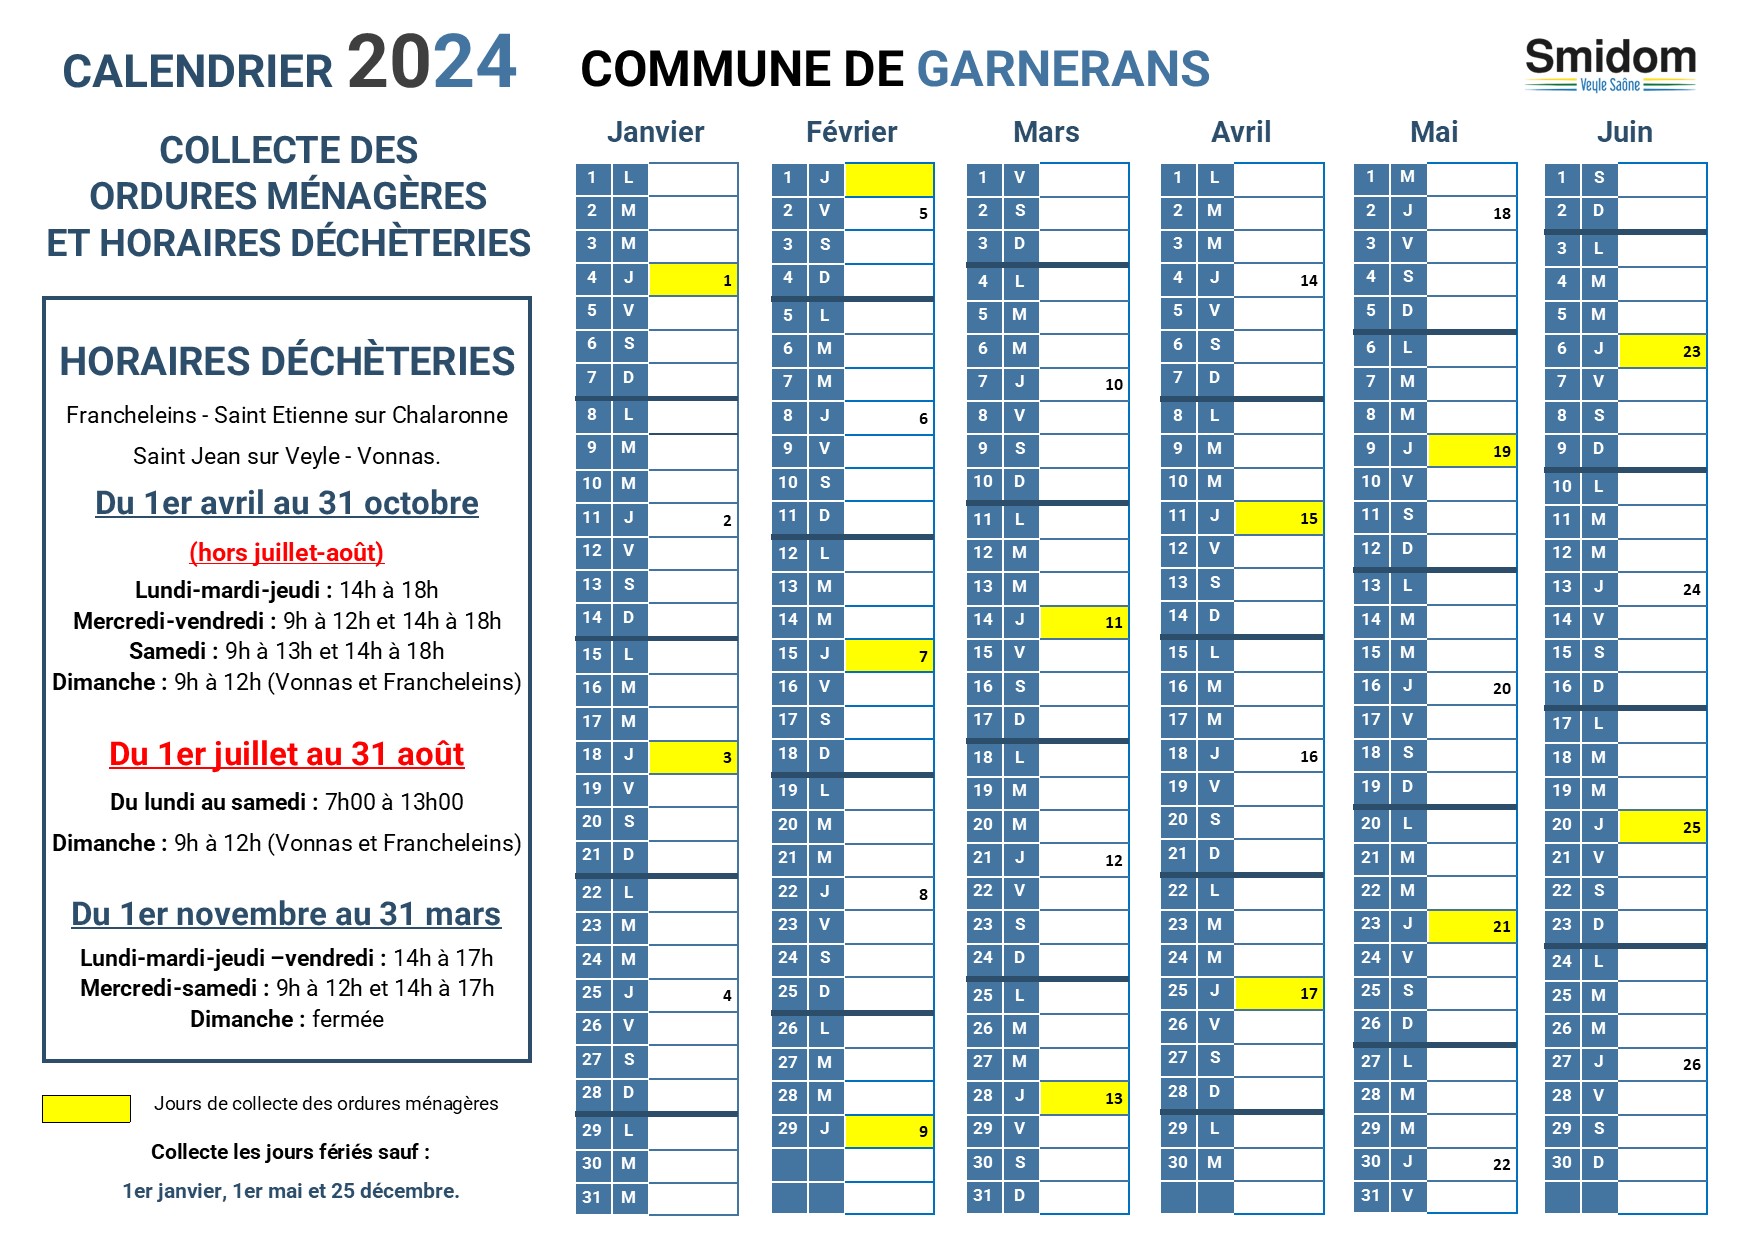 GARNERANS - Calendrier 2024 - 1.jpg